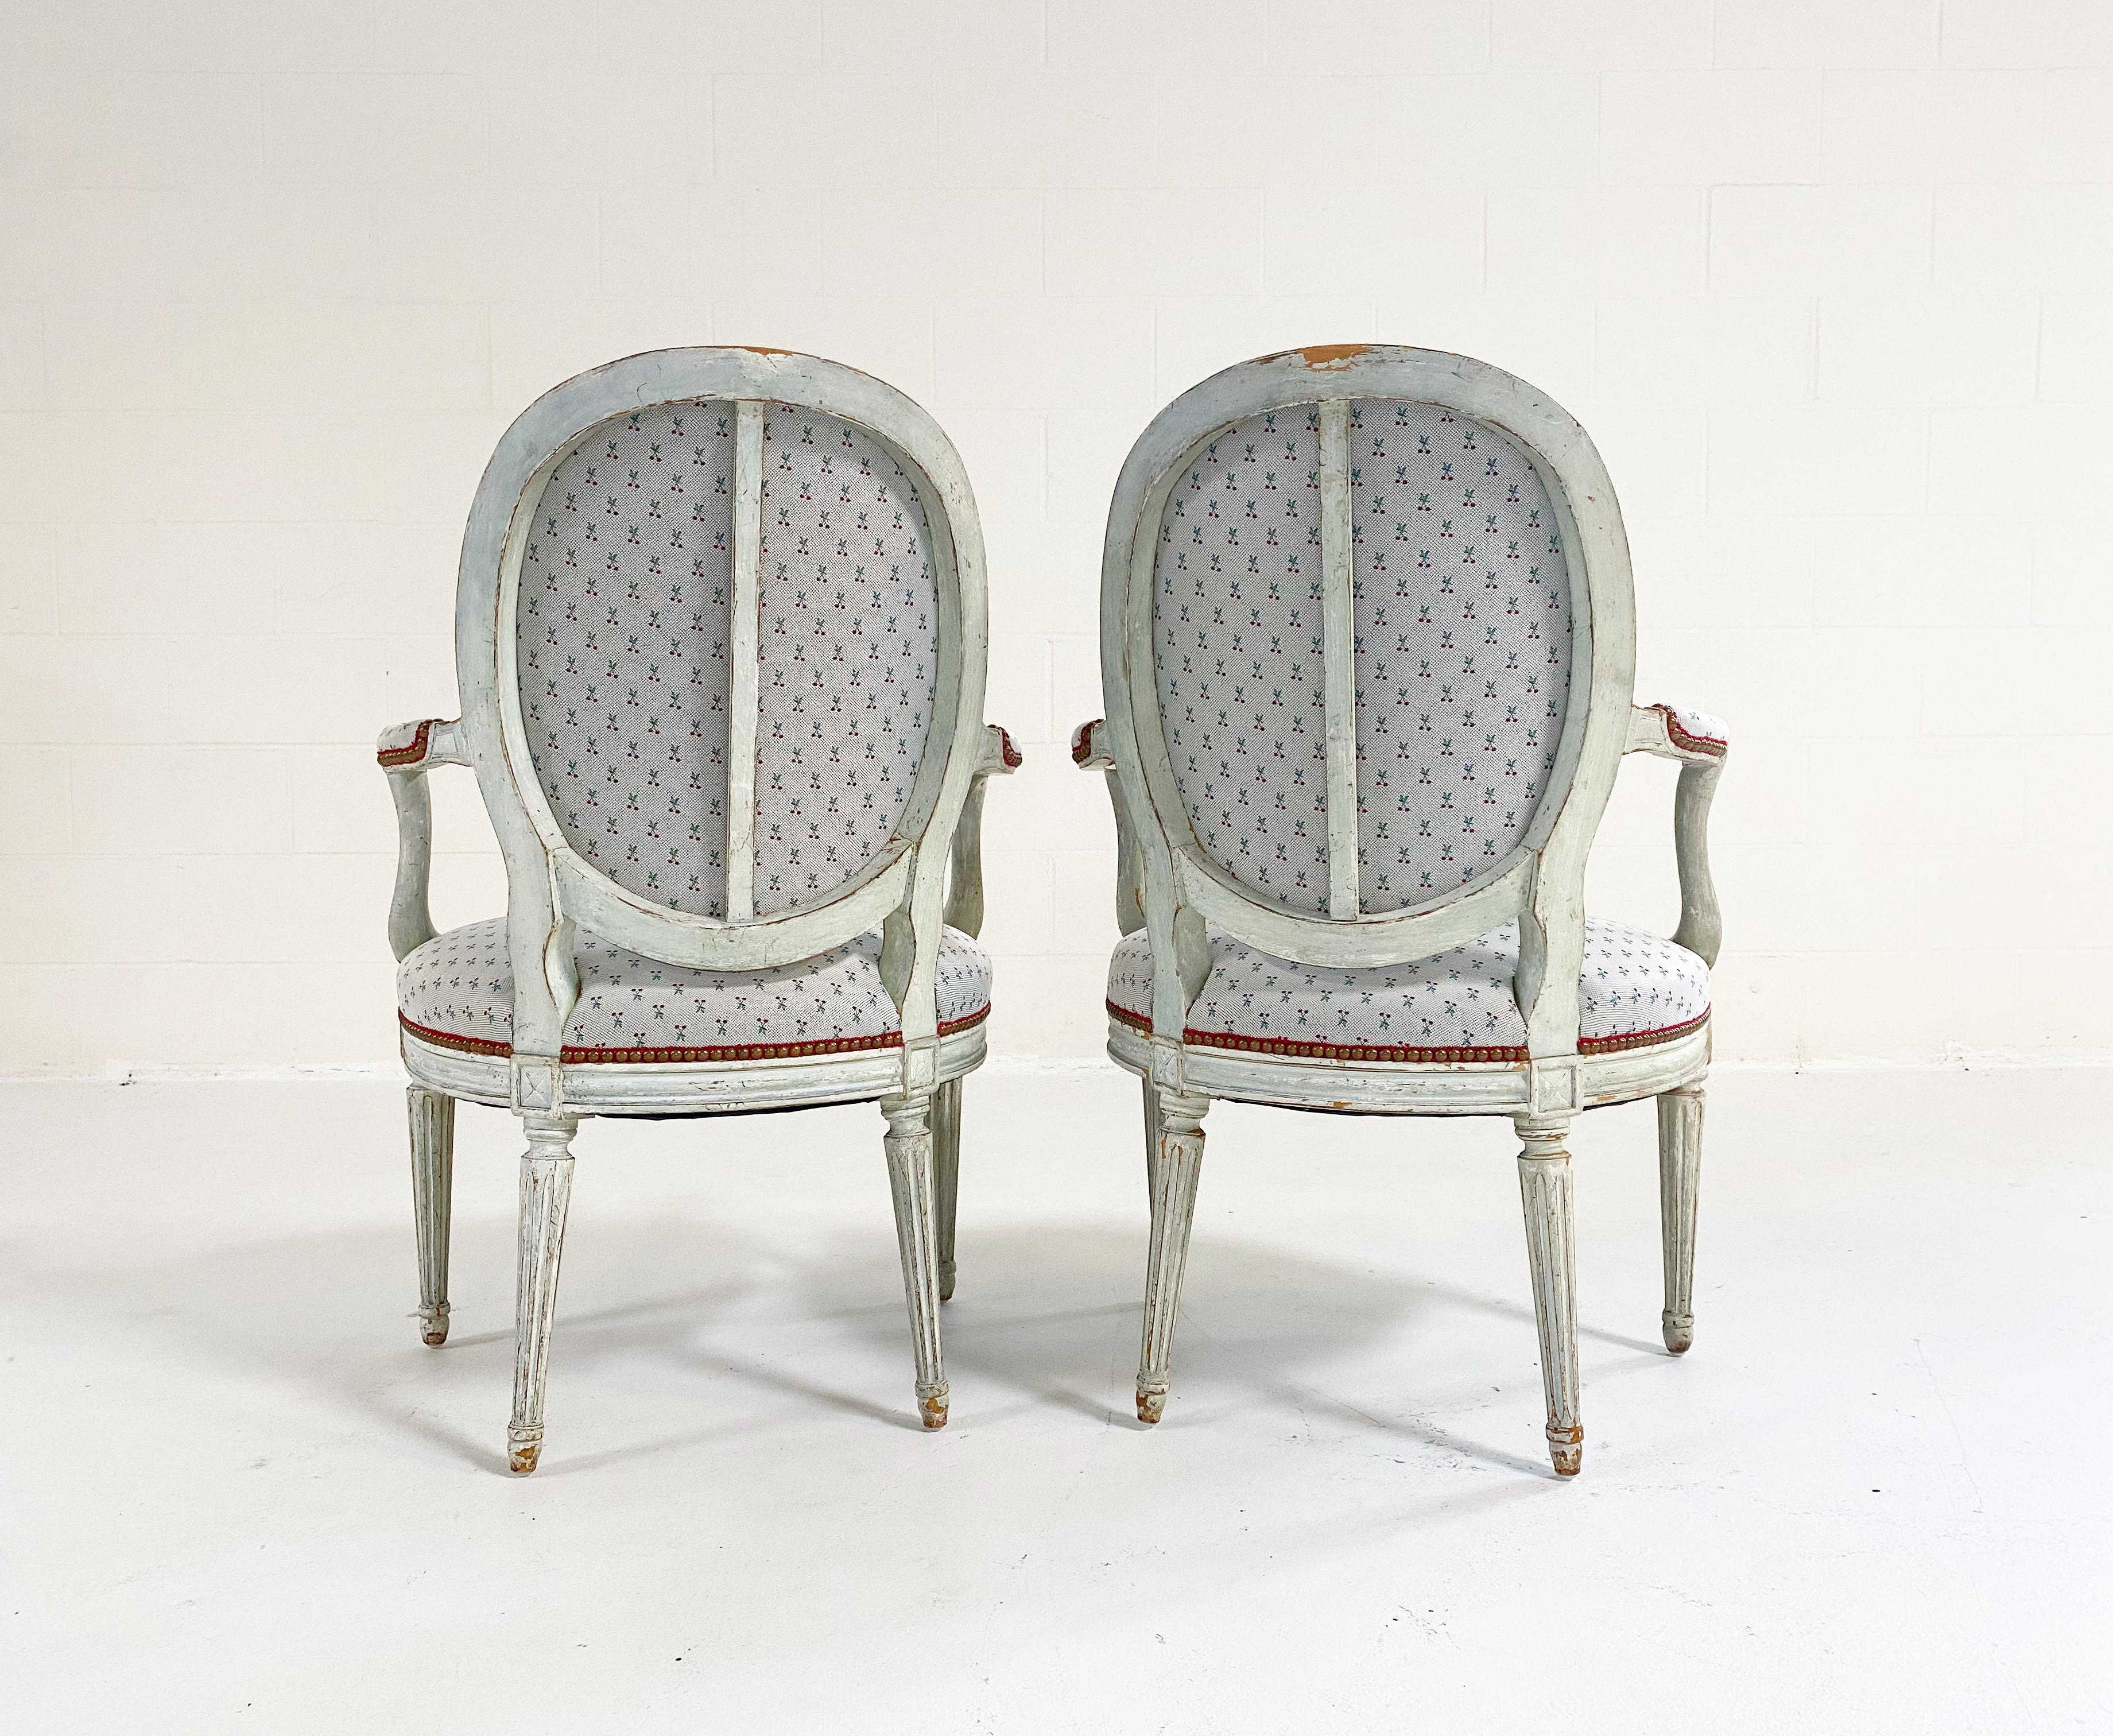 Wir lieben den Rahmen eines Louis-Stuhls. Er ist perfekt für luxuriöse und lustige Stoffe wie Cherry Oh von Dedar. Der Stoff passt besonders gut zu den Rahmen dieser Stühle. Sie sind perfekt patiniert, leicht salbeigrün. Die Sitze und die